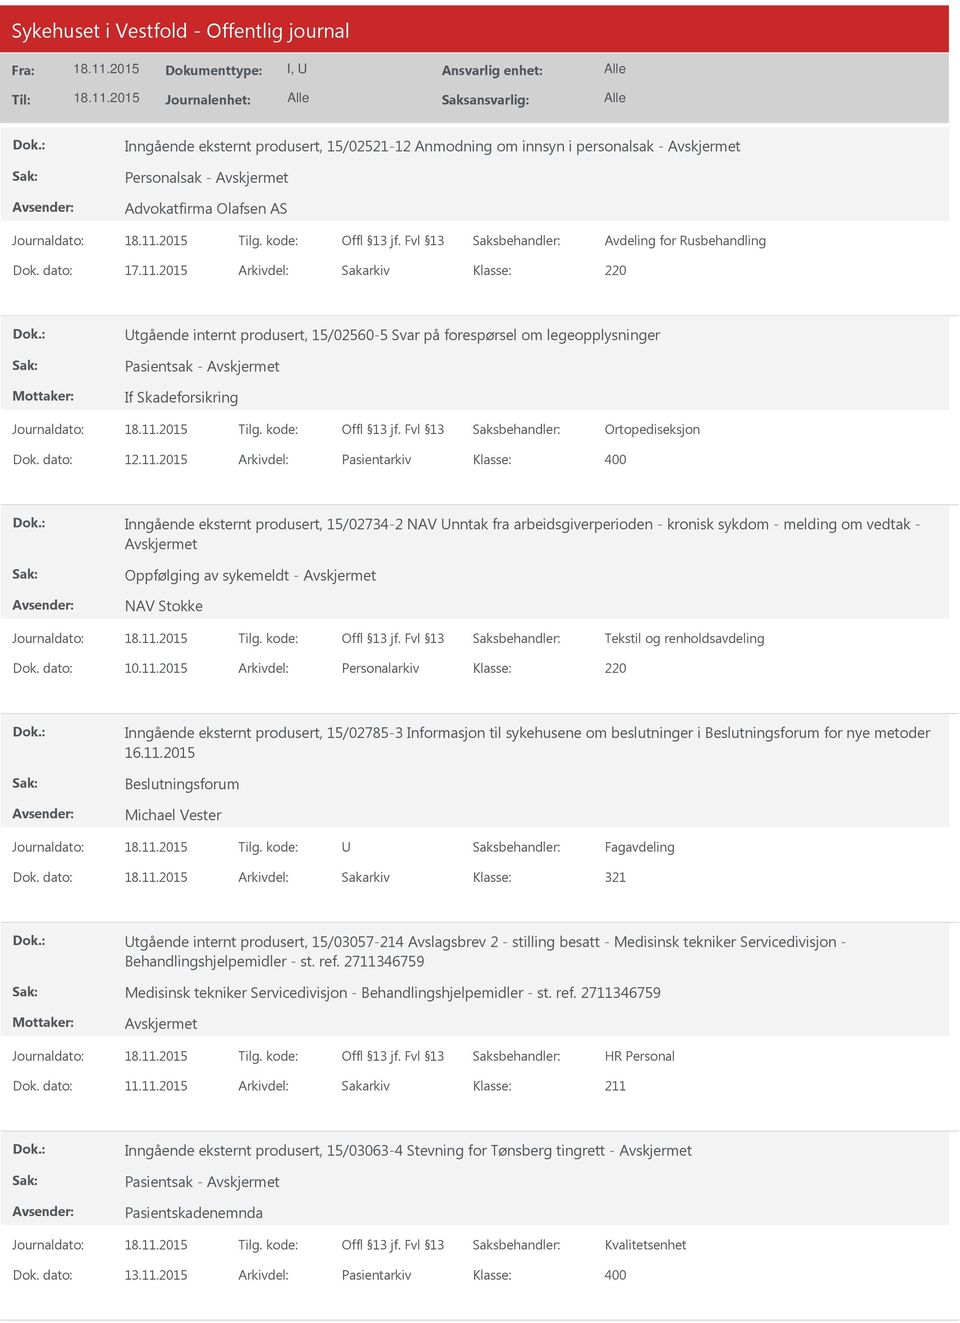 2015 Arkivdel: Pasientarkiv 400 Inngående eksternt produsert, 15/02734-2 NAV nntak fra arbeidsgiverperioden - kronisk sykdom - melding om vedtak - Oppfølging av sykemeldt - NAV Stokke Tekstil og